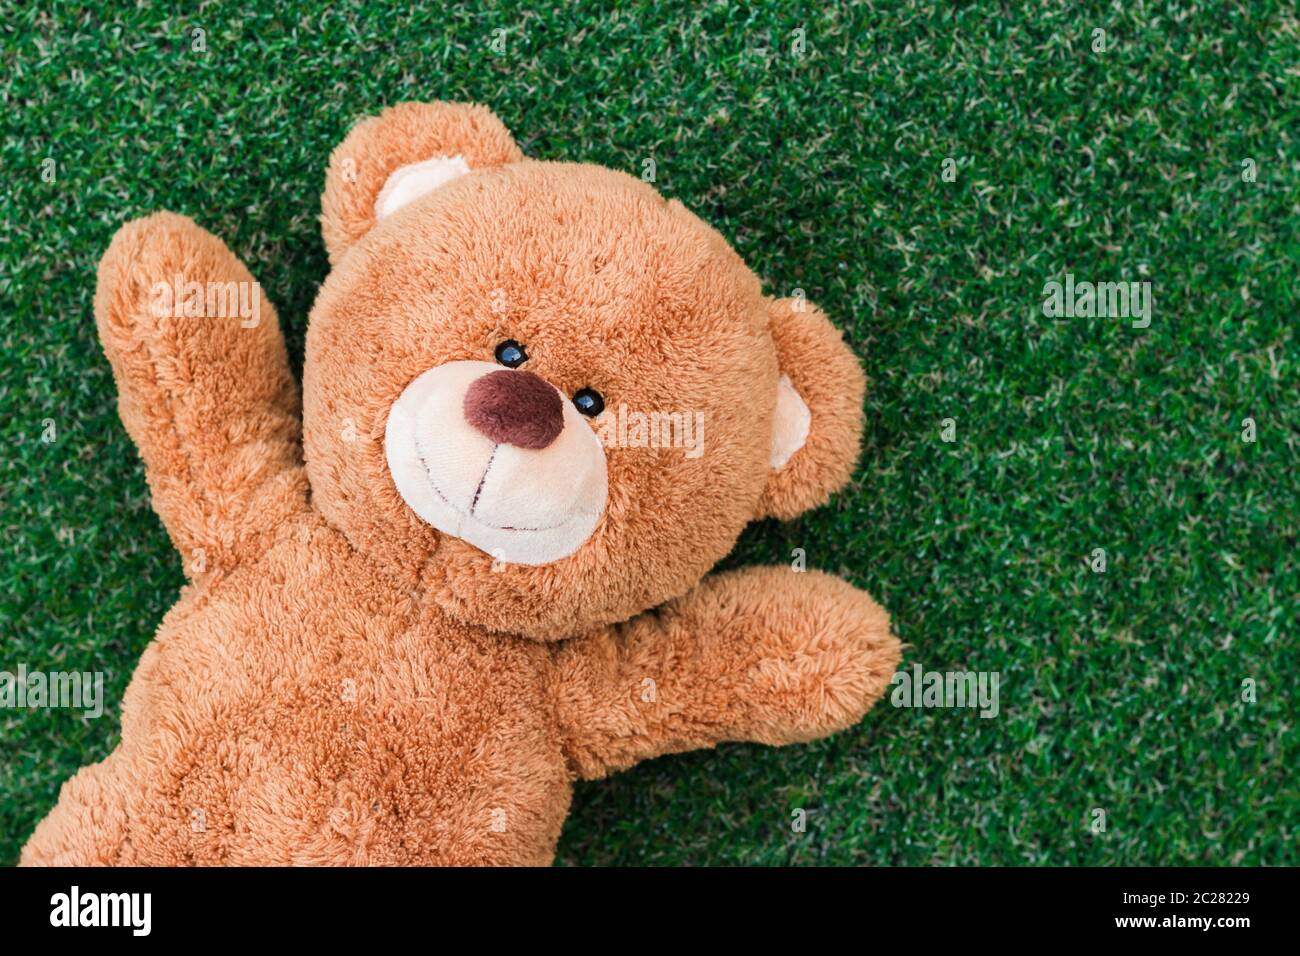 Cute teddy bear Stock Photo